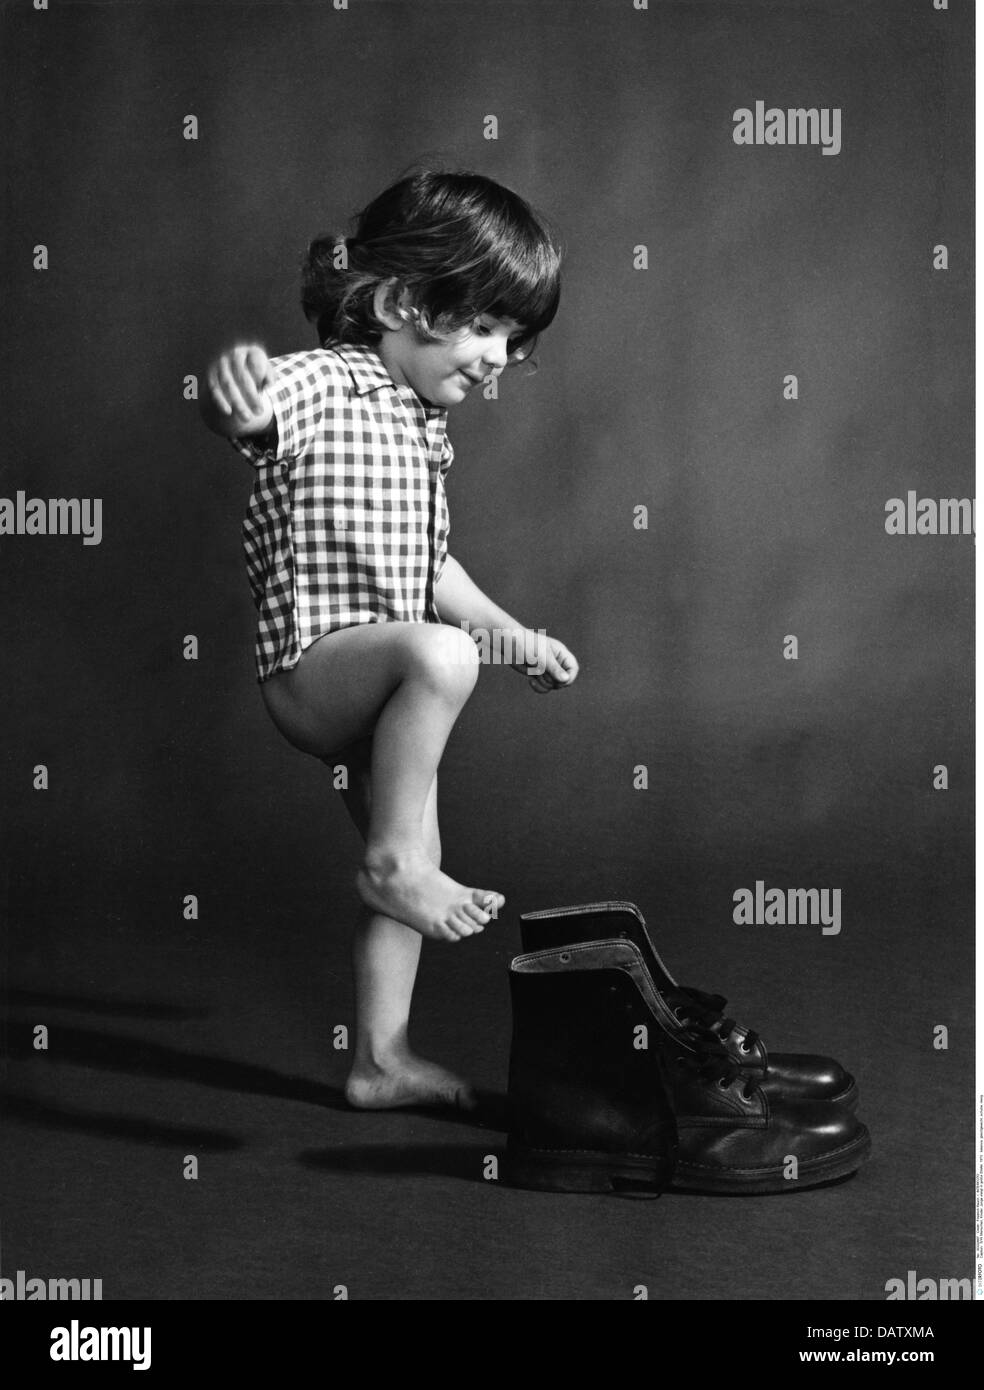 Personnes, enfants, nourrissons (jusqu'à 5 ans), garçon essayant d'entrer dans de grandes bottes, 1973, droits supplémentaires-Clearences-non disponible Banque D'Images